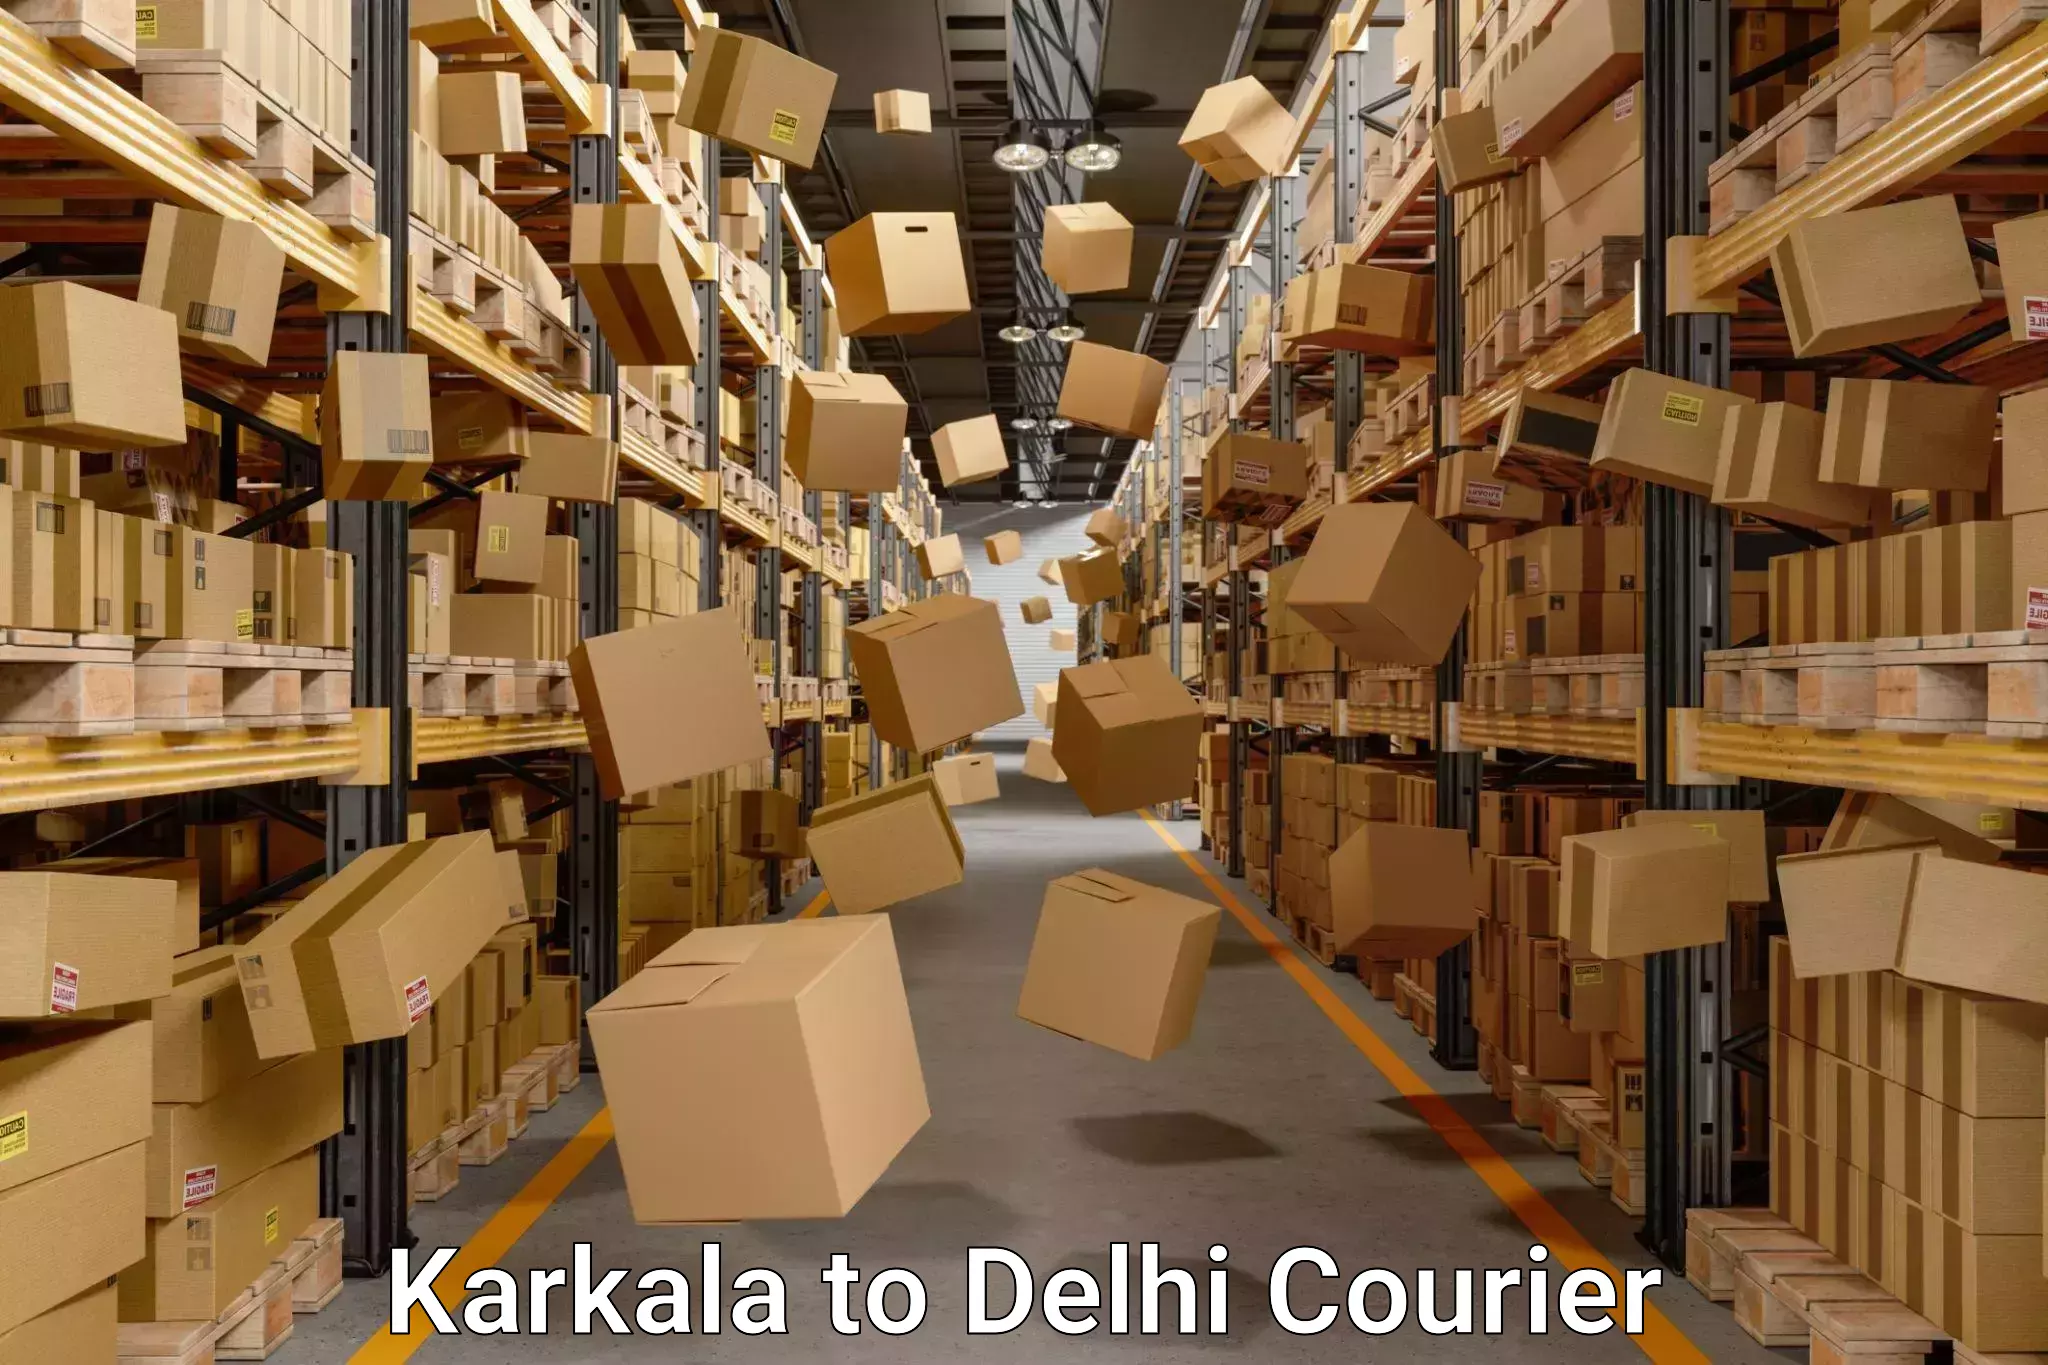 Quick household relocation Karkala to IIT Delhi